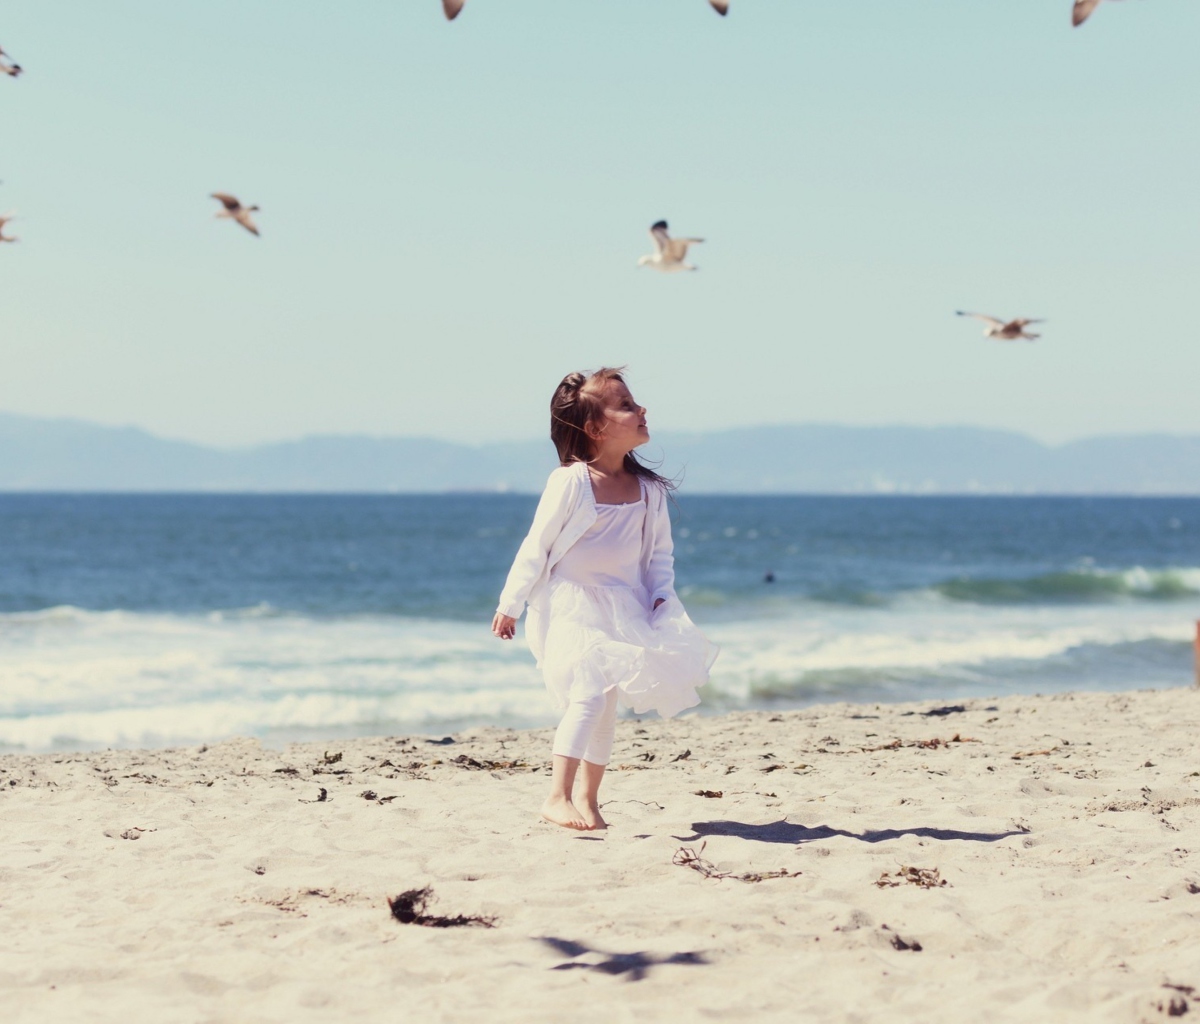 Little Girl At Beach And Seagulls screenshot #1 1200x1024